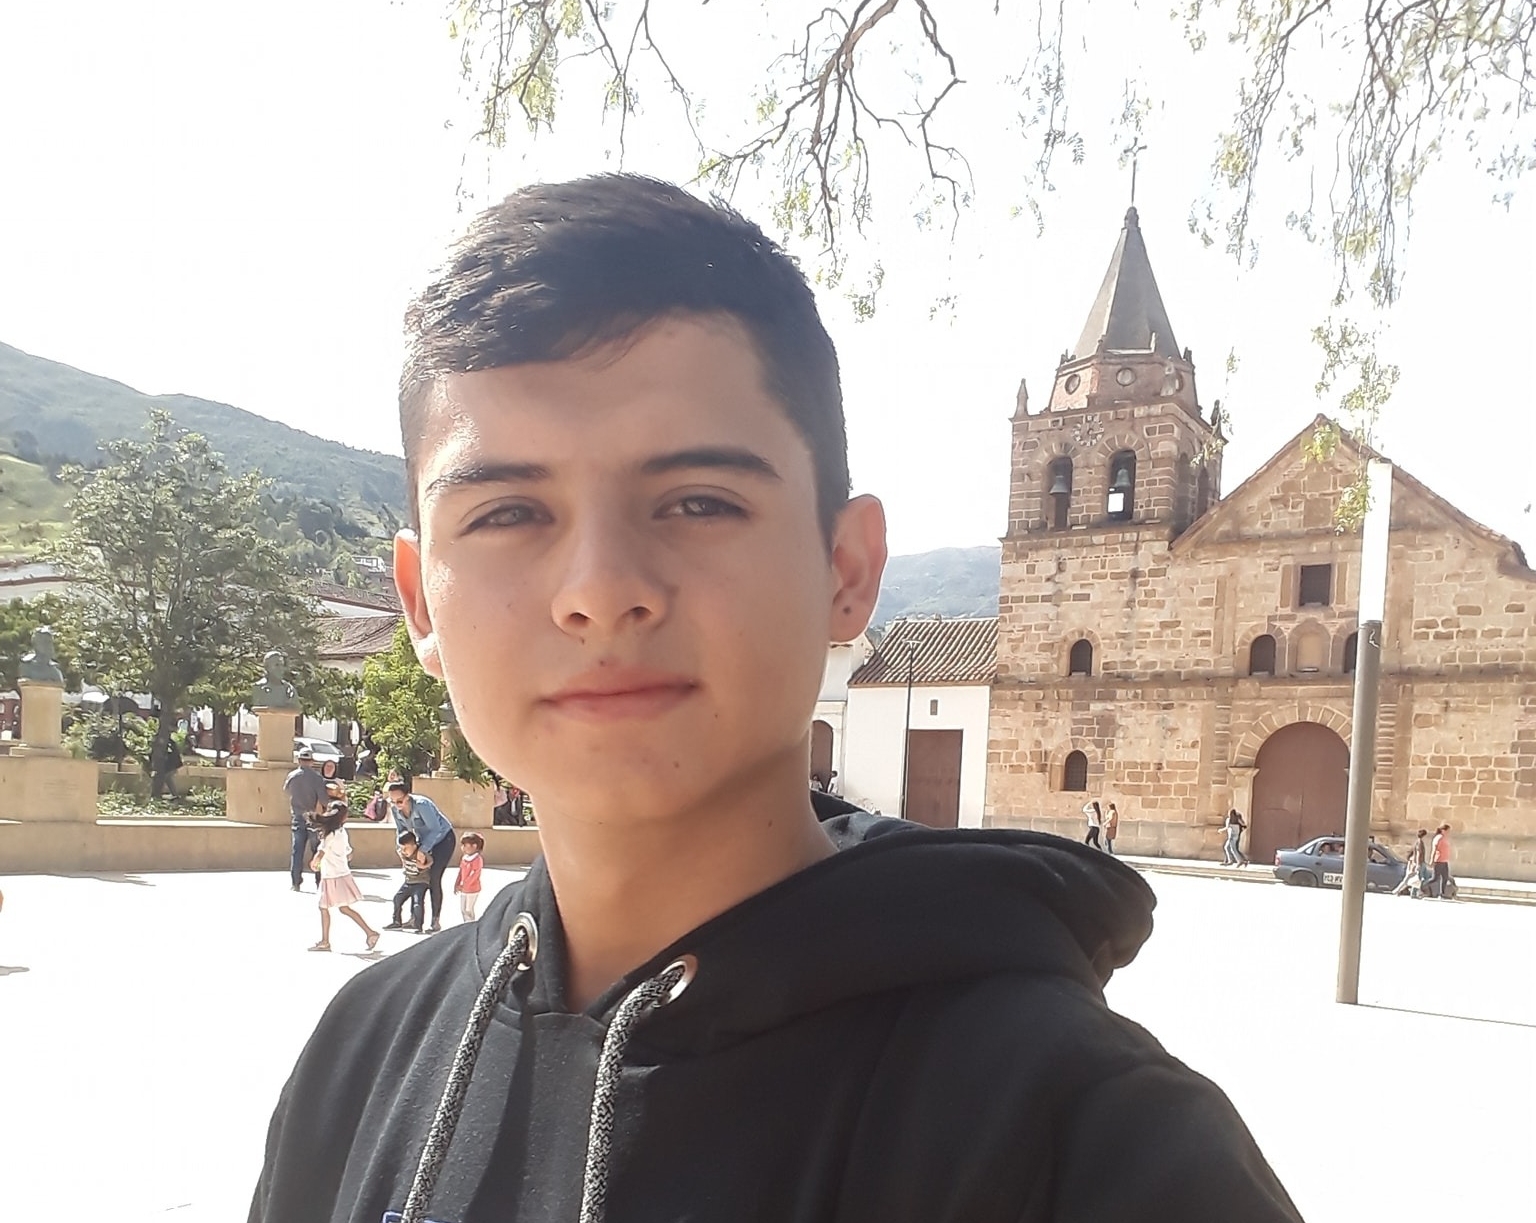 Sergio Ricardo Calderón Garzón, de 22 años, fue asesinado el 17 de septiembre pasado en la zona 6 de la Ciudad de Guatemala. Había salido de Colombia hace un mes y cruzó la selva del Darién en Panamá en busca de nuevas oportunidades. (Foto Prensa Libre: Facebook).